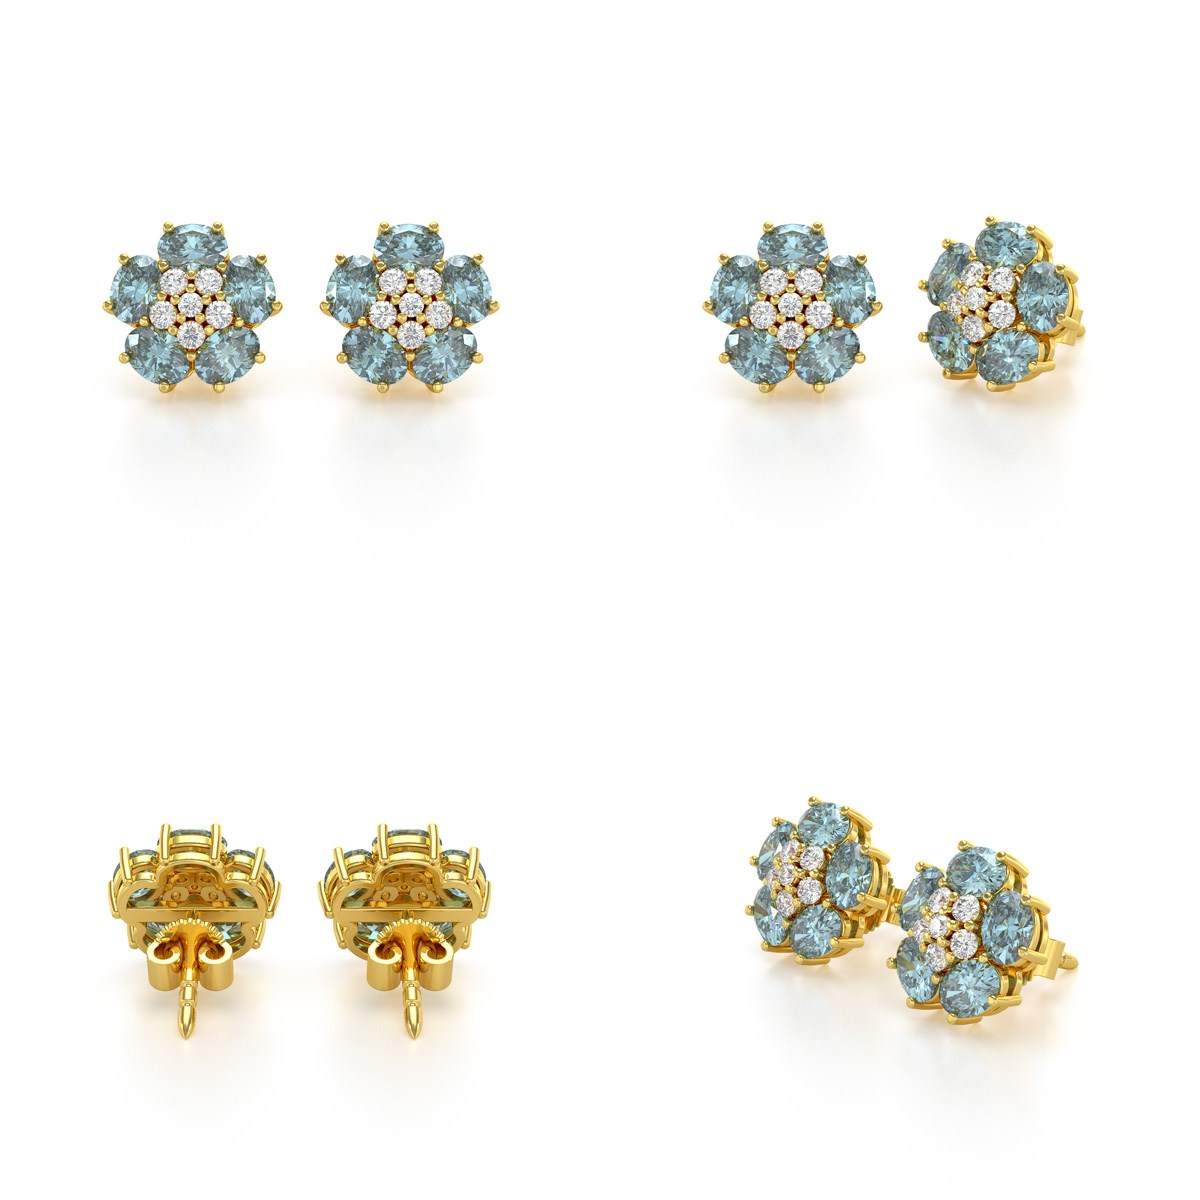 Boucles d'oreilles ADEN Or 585 Jaune Aigue-Marine Fleur et Diamants 2.86grs - vue 4